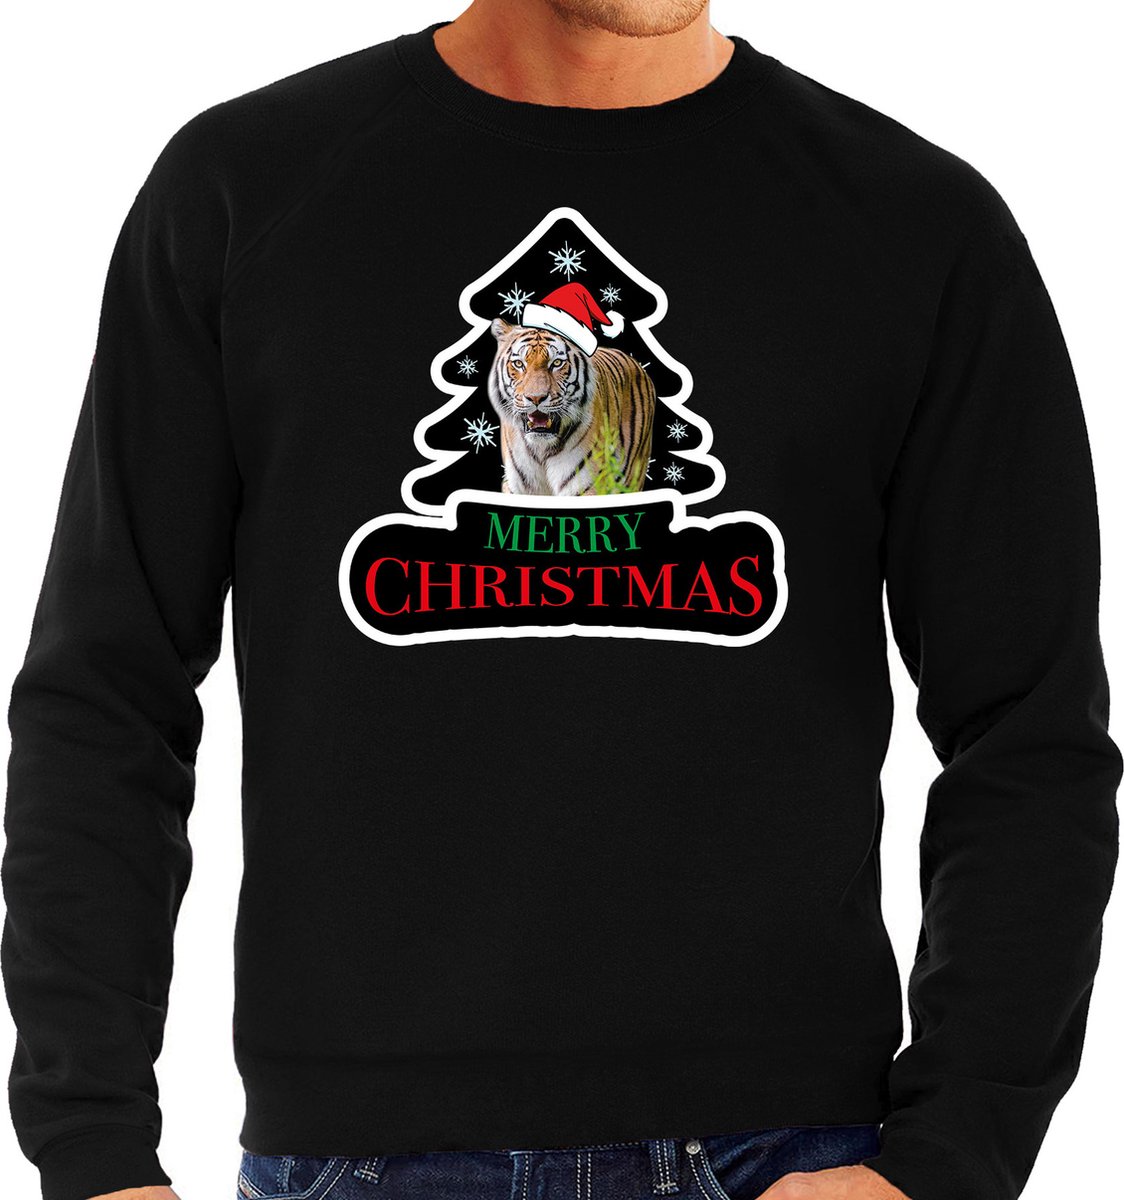 Dieren kersttrui tijger zwart heren - Foute tijgers kerstsweater - Kerst outfit dieren liefhebber S